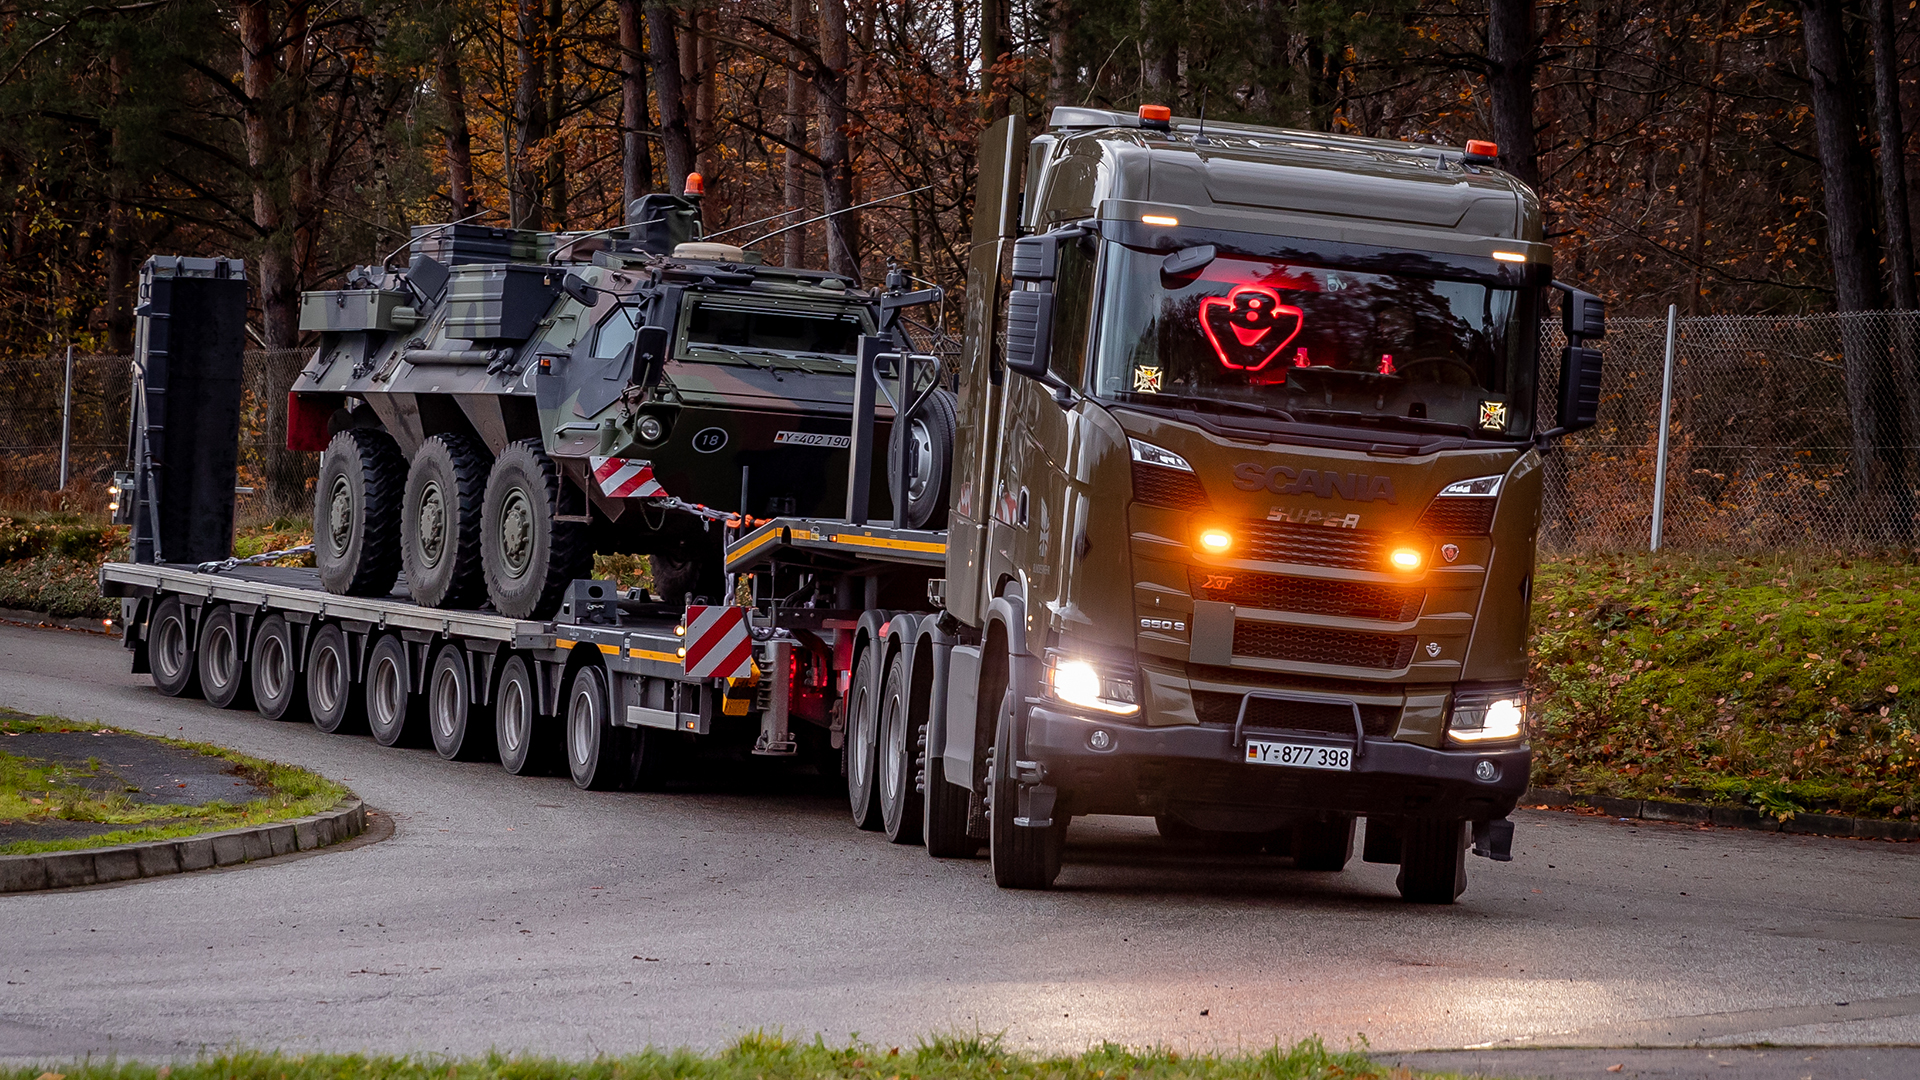 Lastwagen transportiert militärisches Fahrzeug zu seinem Einsatzort.